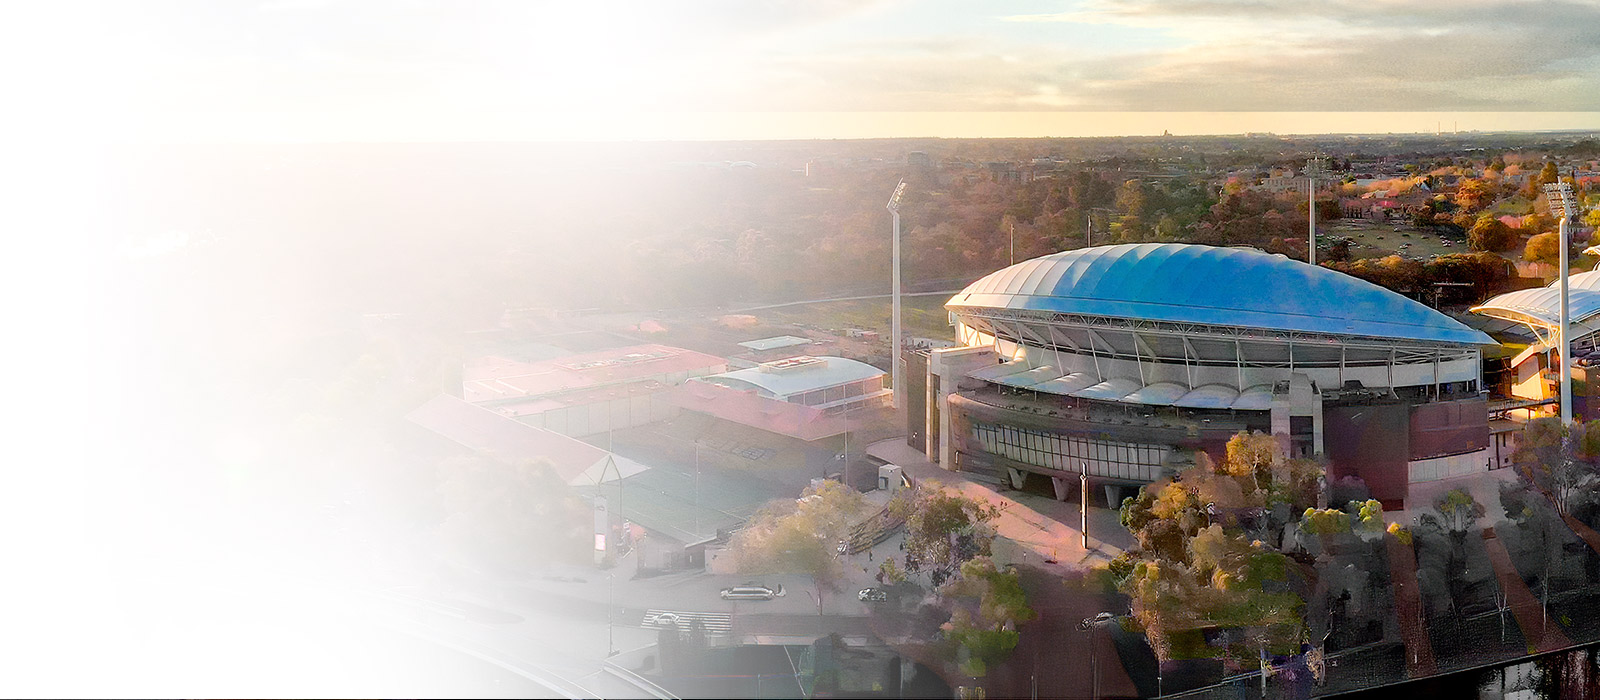 Adelaide stadium